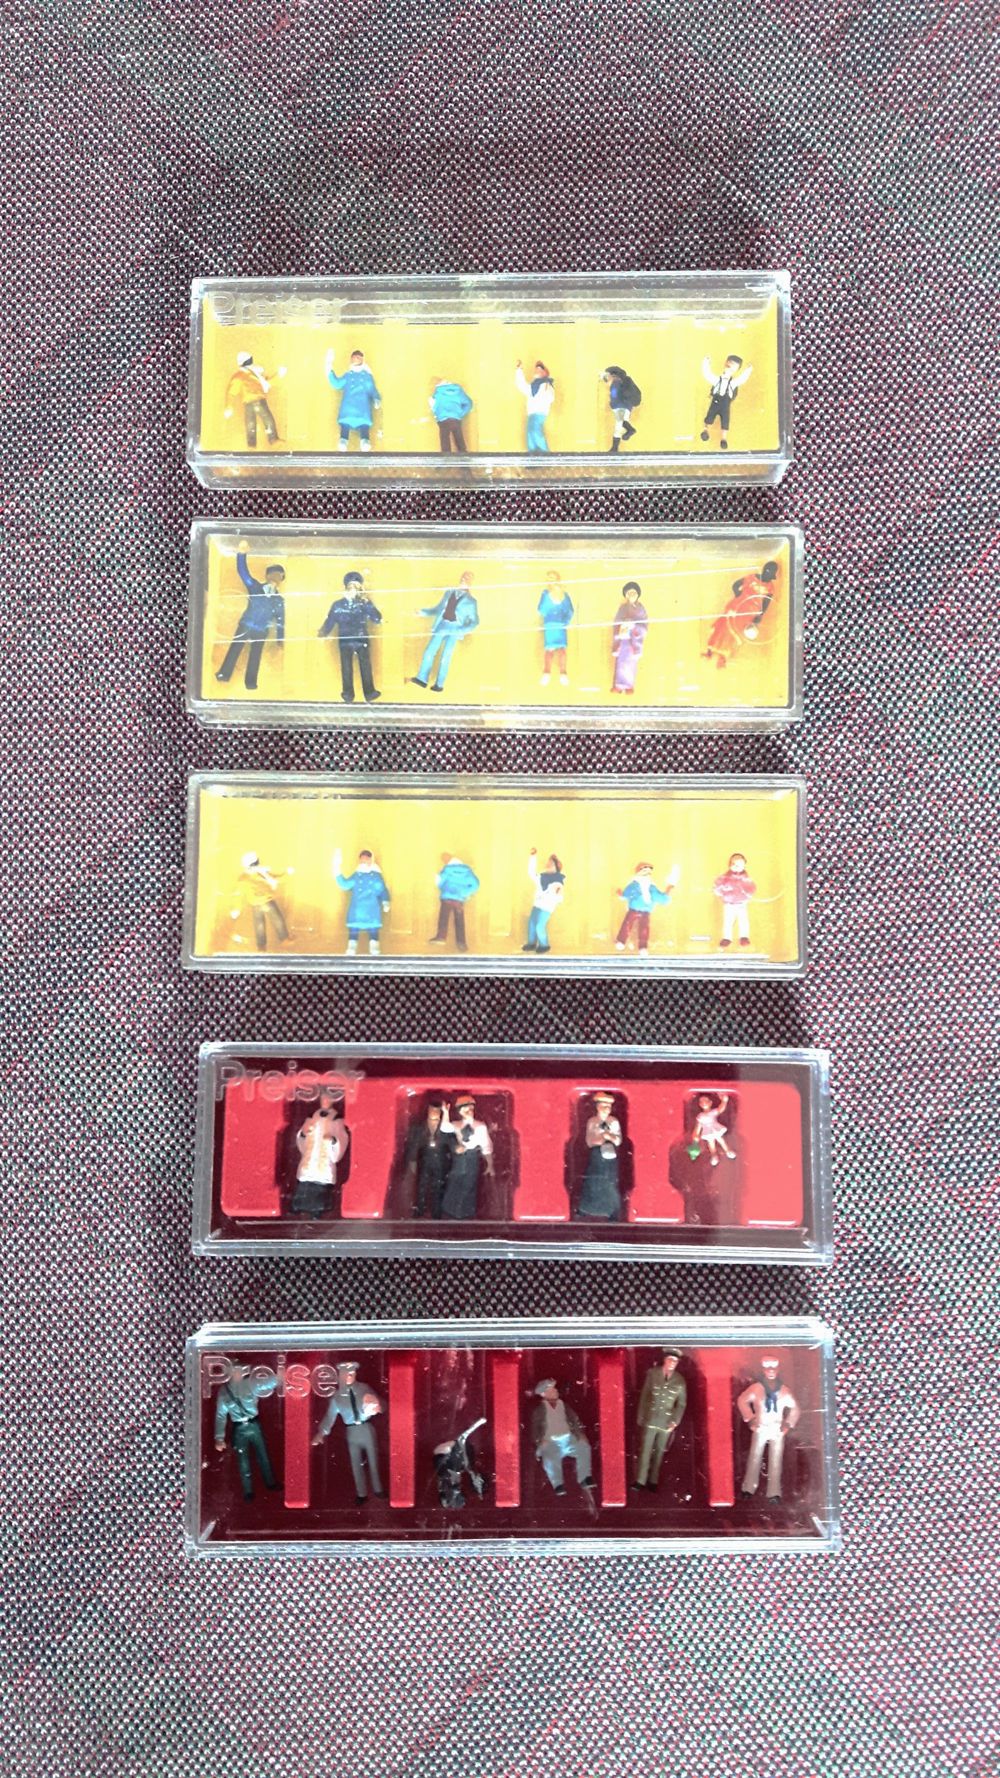 Modellbau Preiser Miniaturfiguren HO 1:87 NEUWERTIG